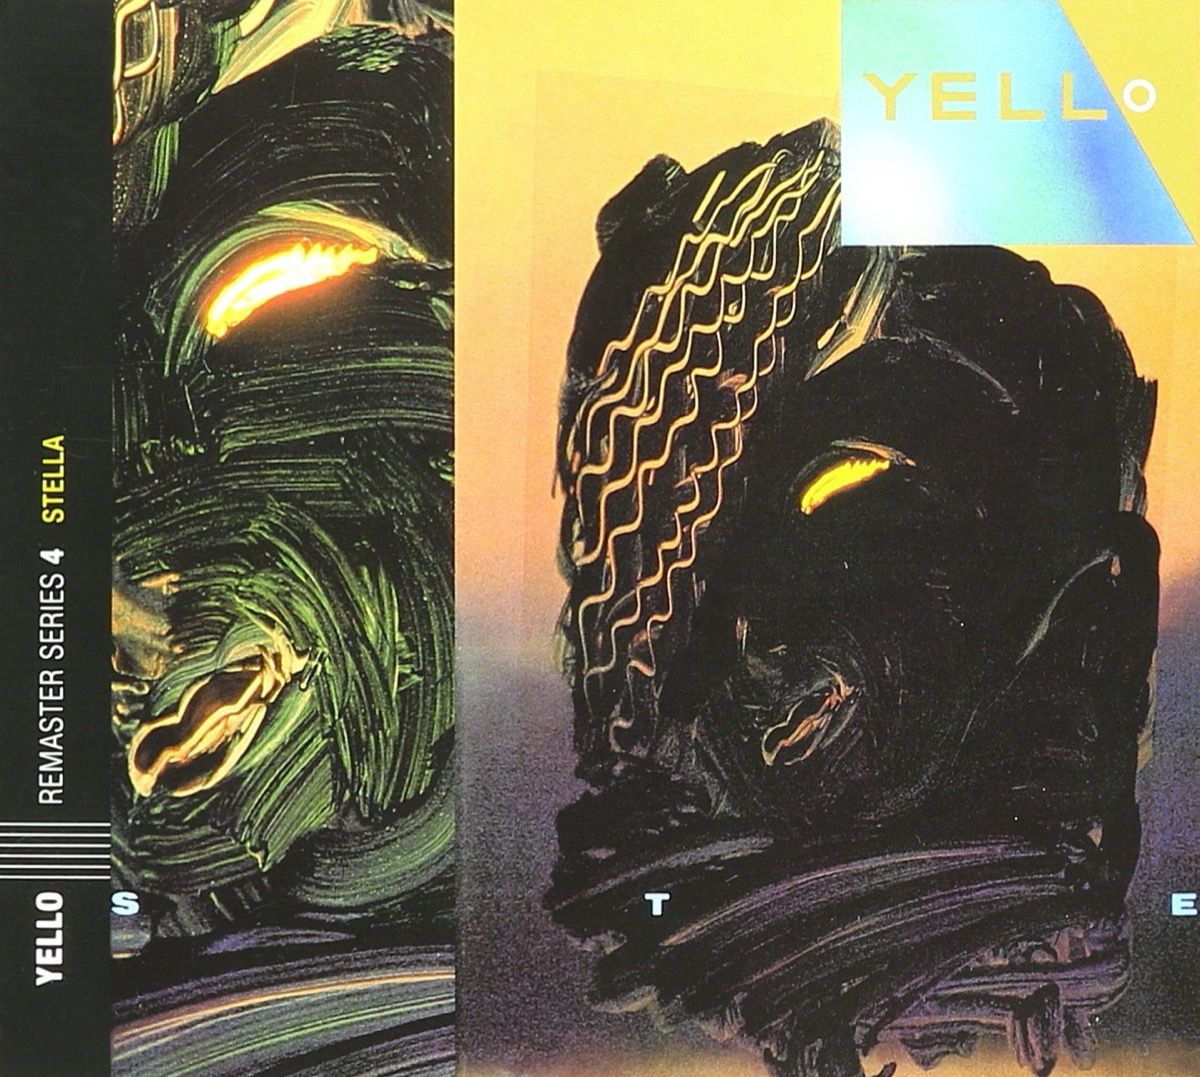 غلاف الألبوم ستيلا من قبل yello